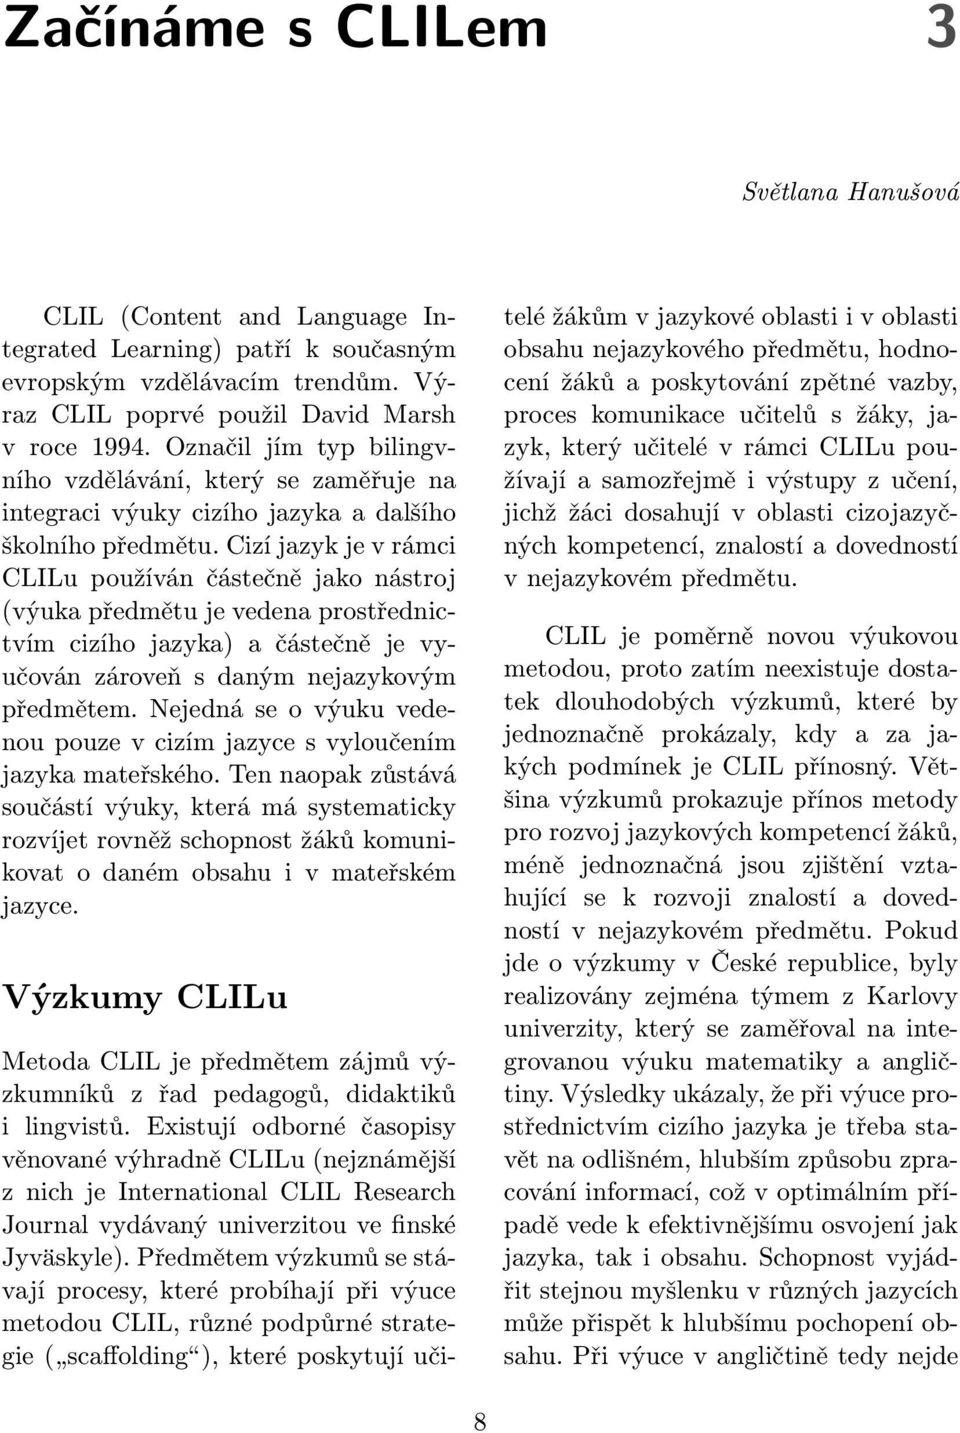 Cizí jazyk je v rámci CLILu používán částečně jako nástroj (výuka předmětu je vedena prostřednictvím cizího jazyka) a částečně je vyučován zároveň s daným nejazykovým předmětem.